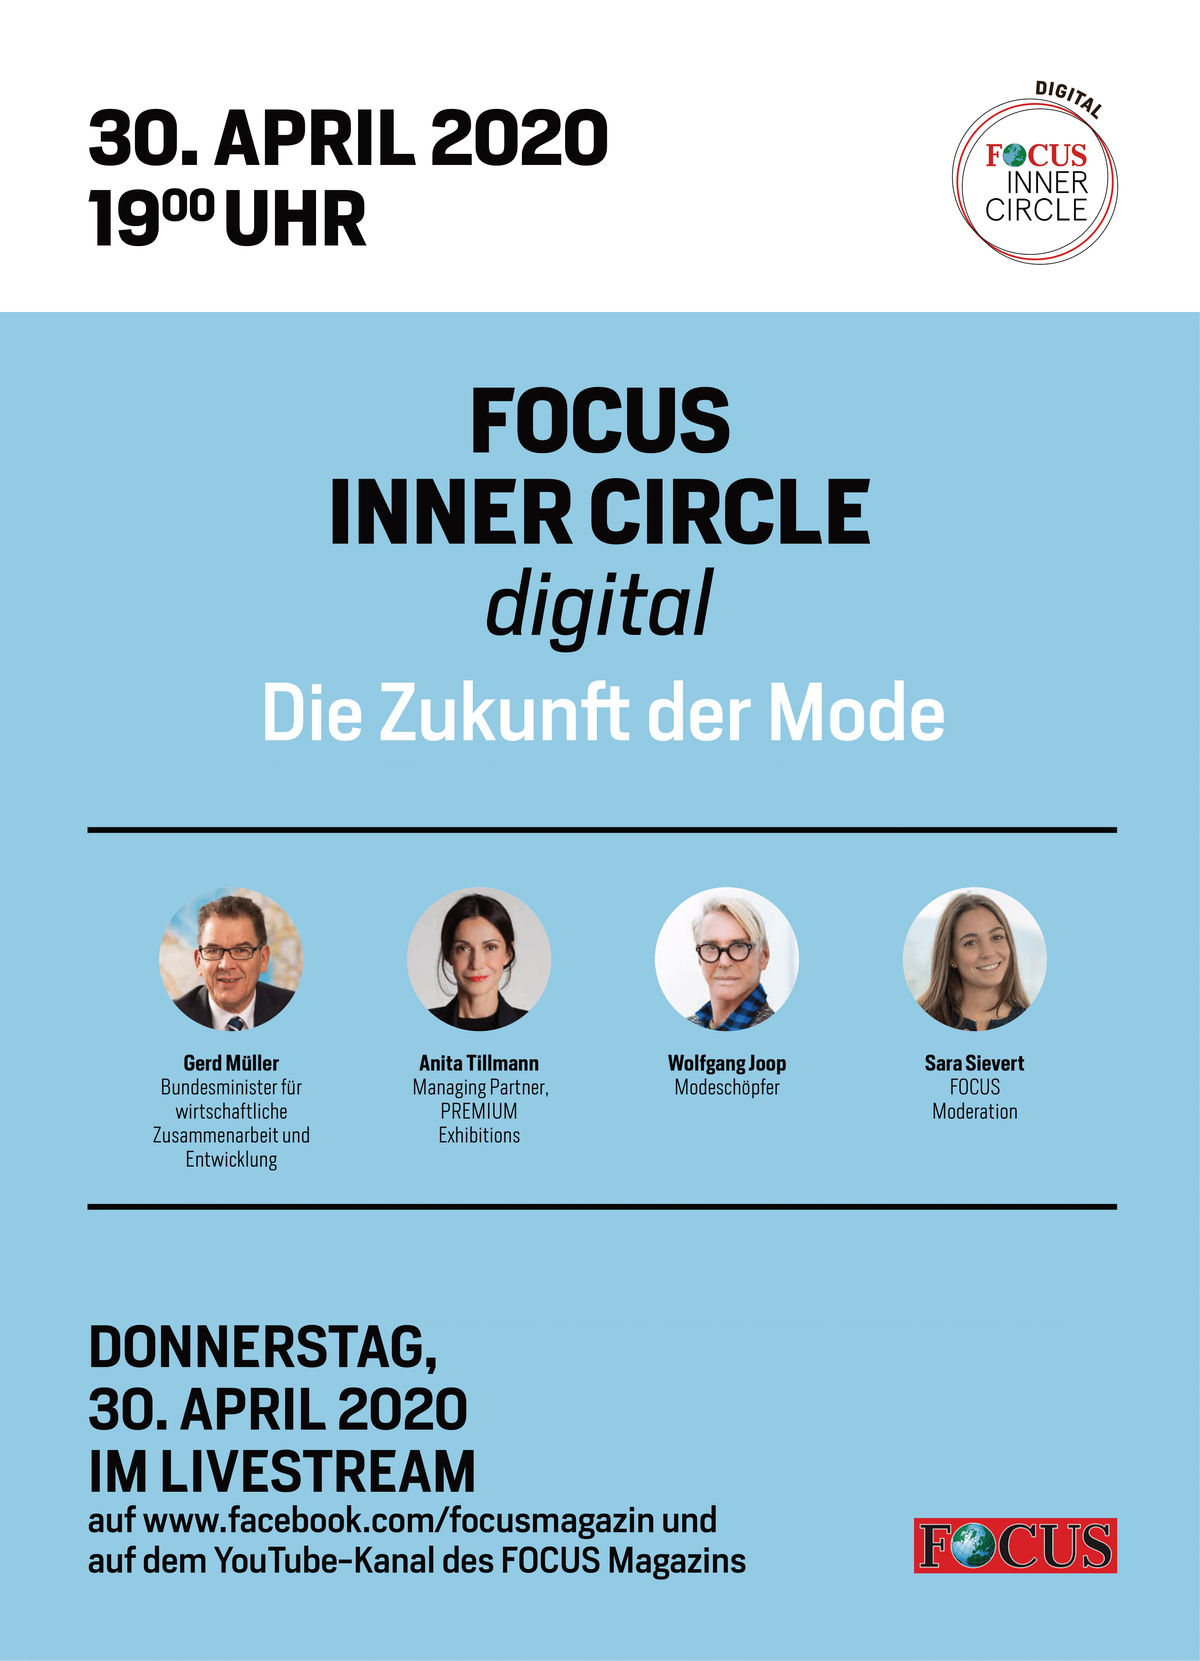 Focus Inner Circle digital "Die Zukunft der Mode"